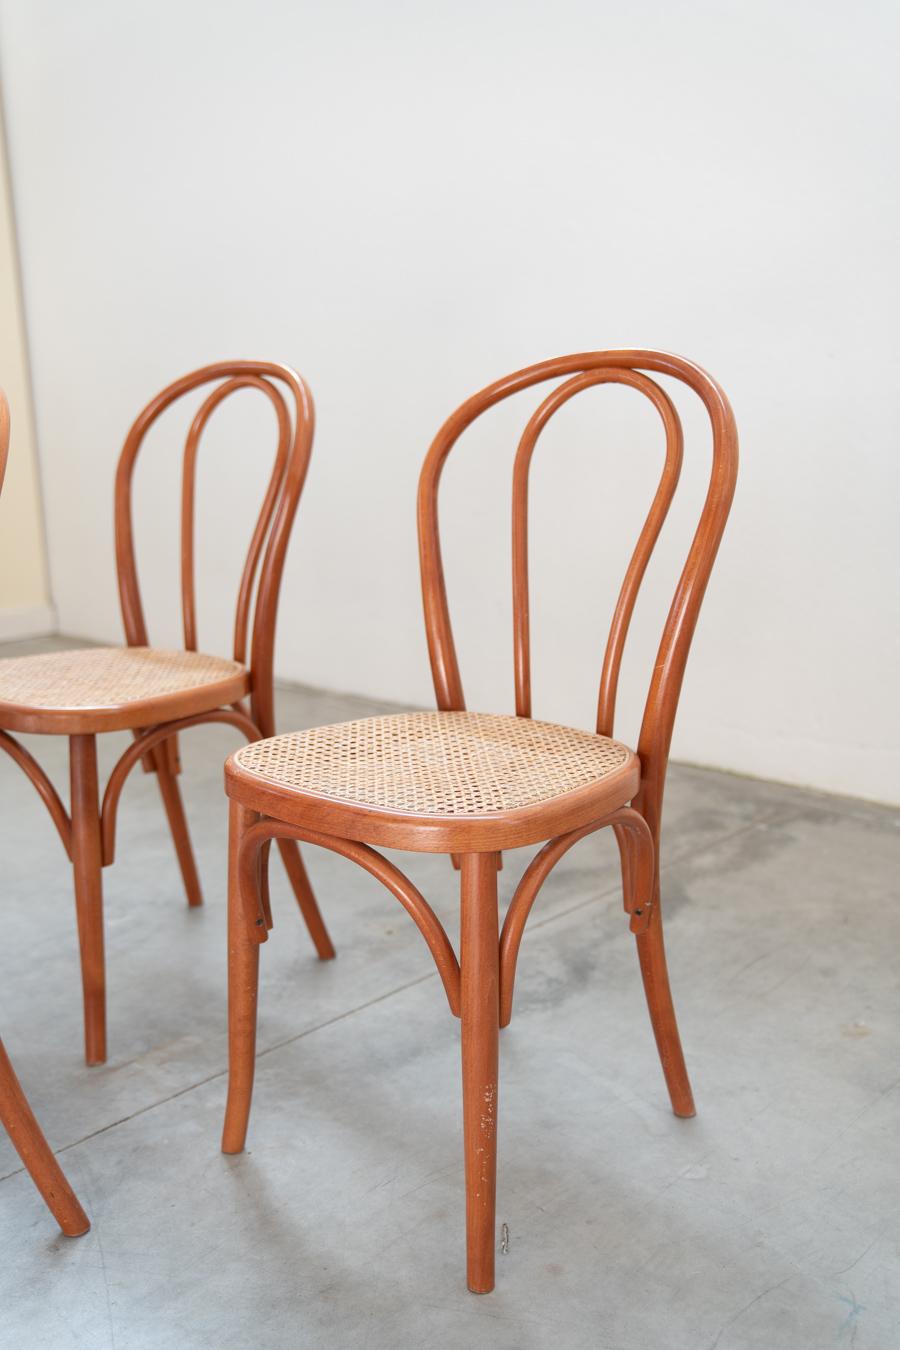 Sedie stile Thonet, in legno di faggio curvato e seduta in paglia, nr 34 totale For Sale 2